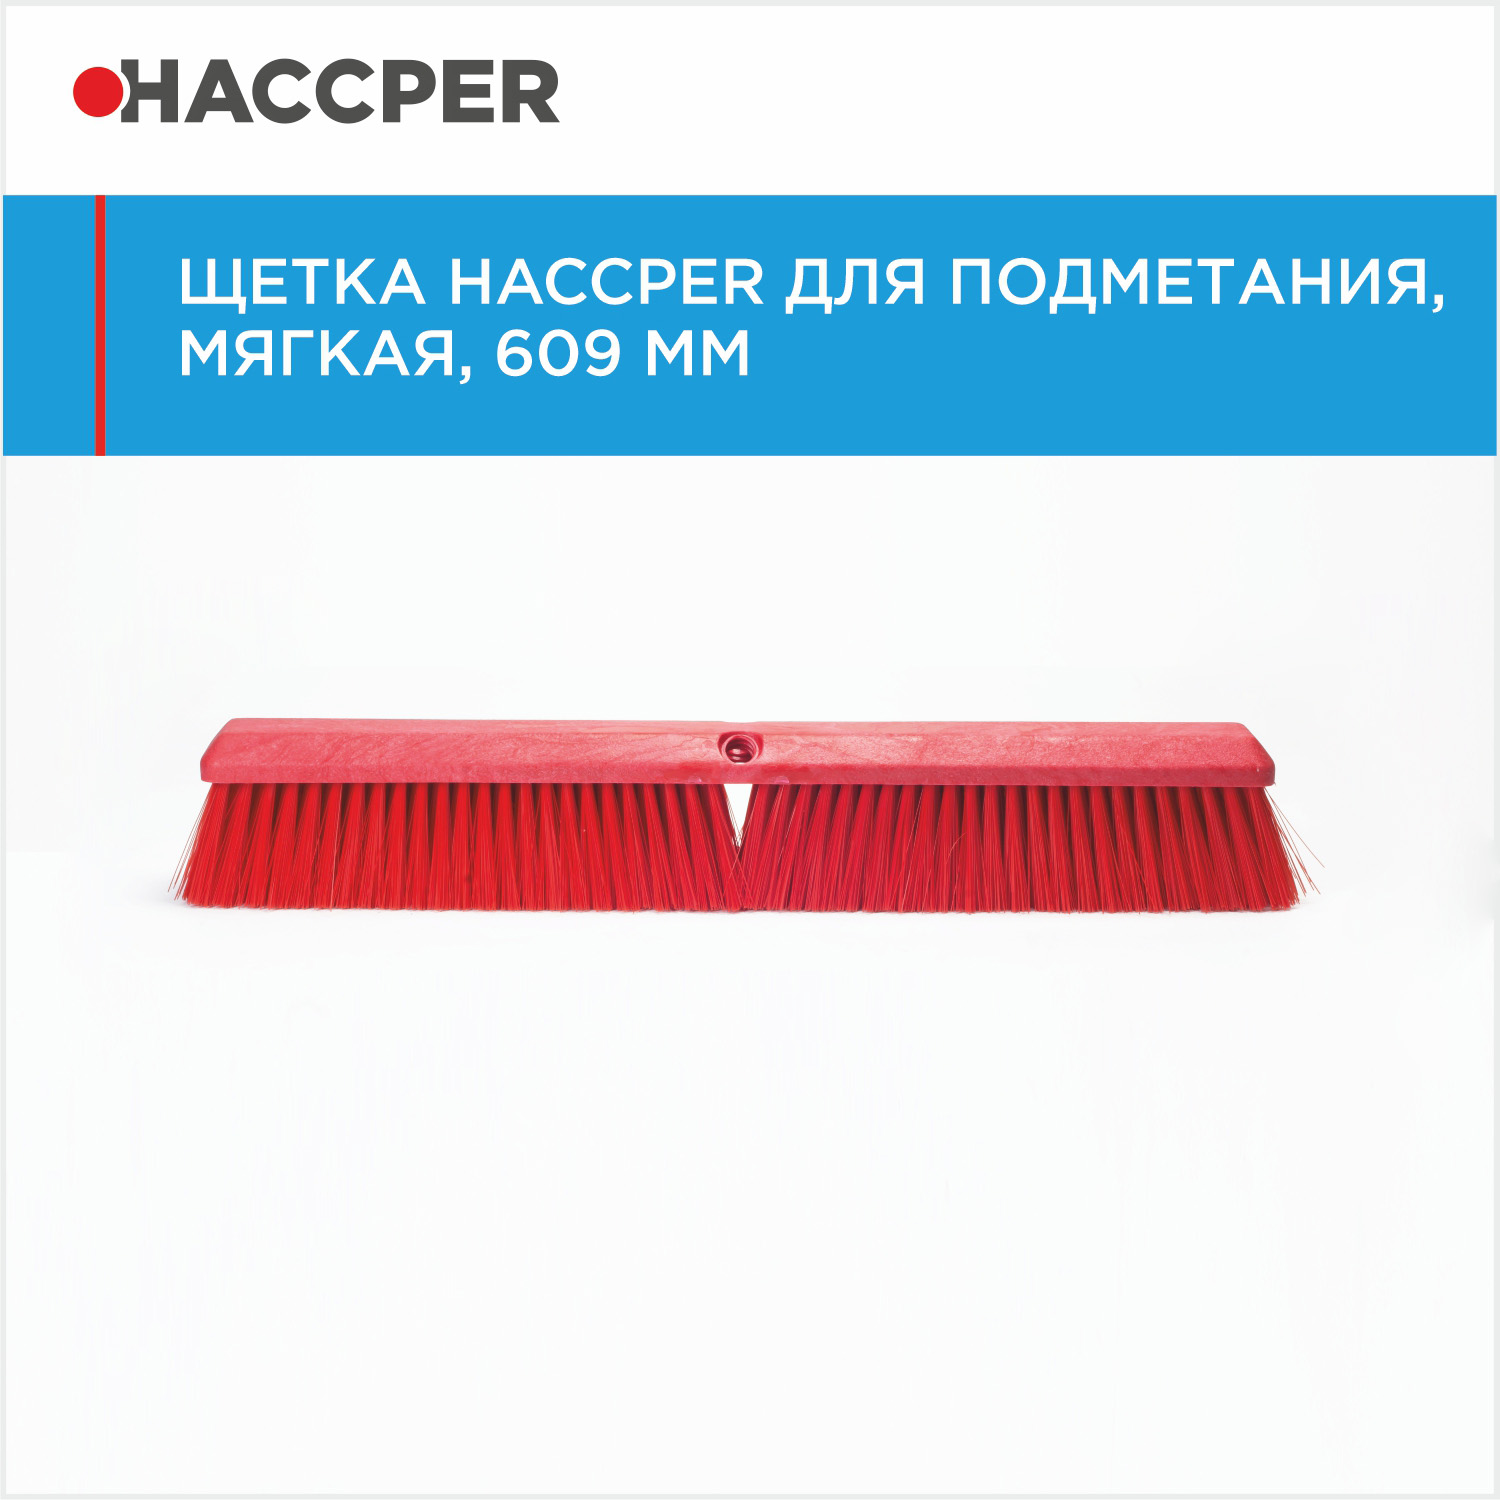 Щетка HACCPER для подметания, мягкая, 609 мм, красная